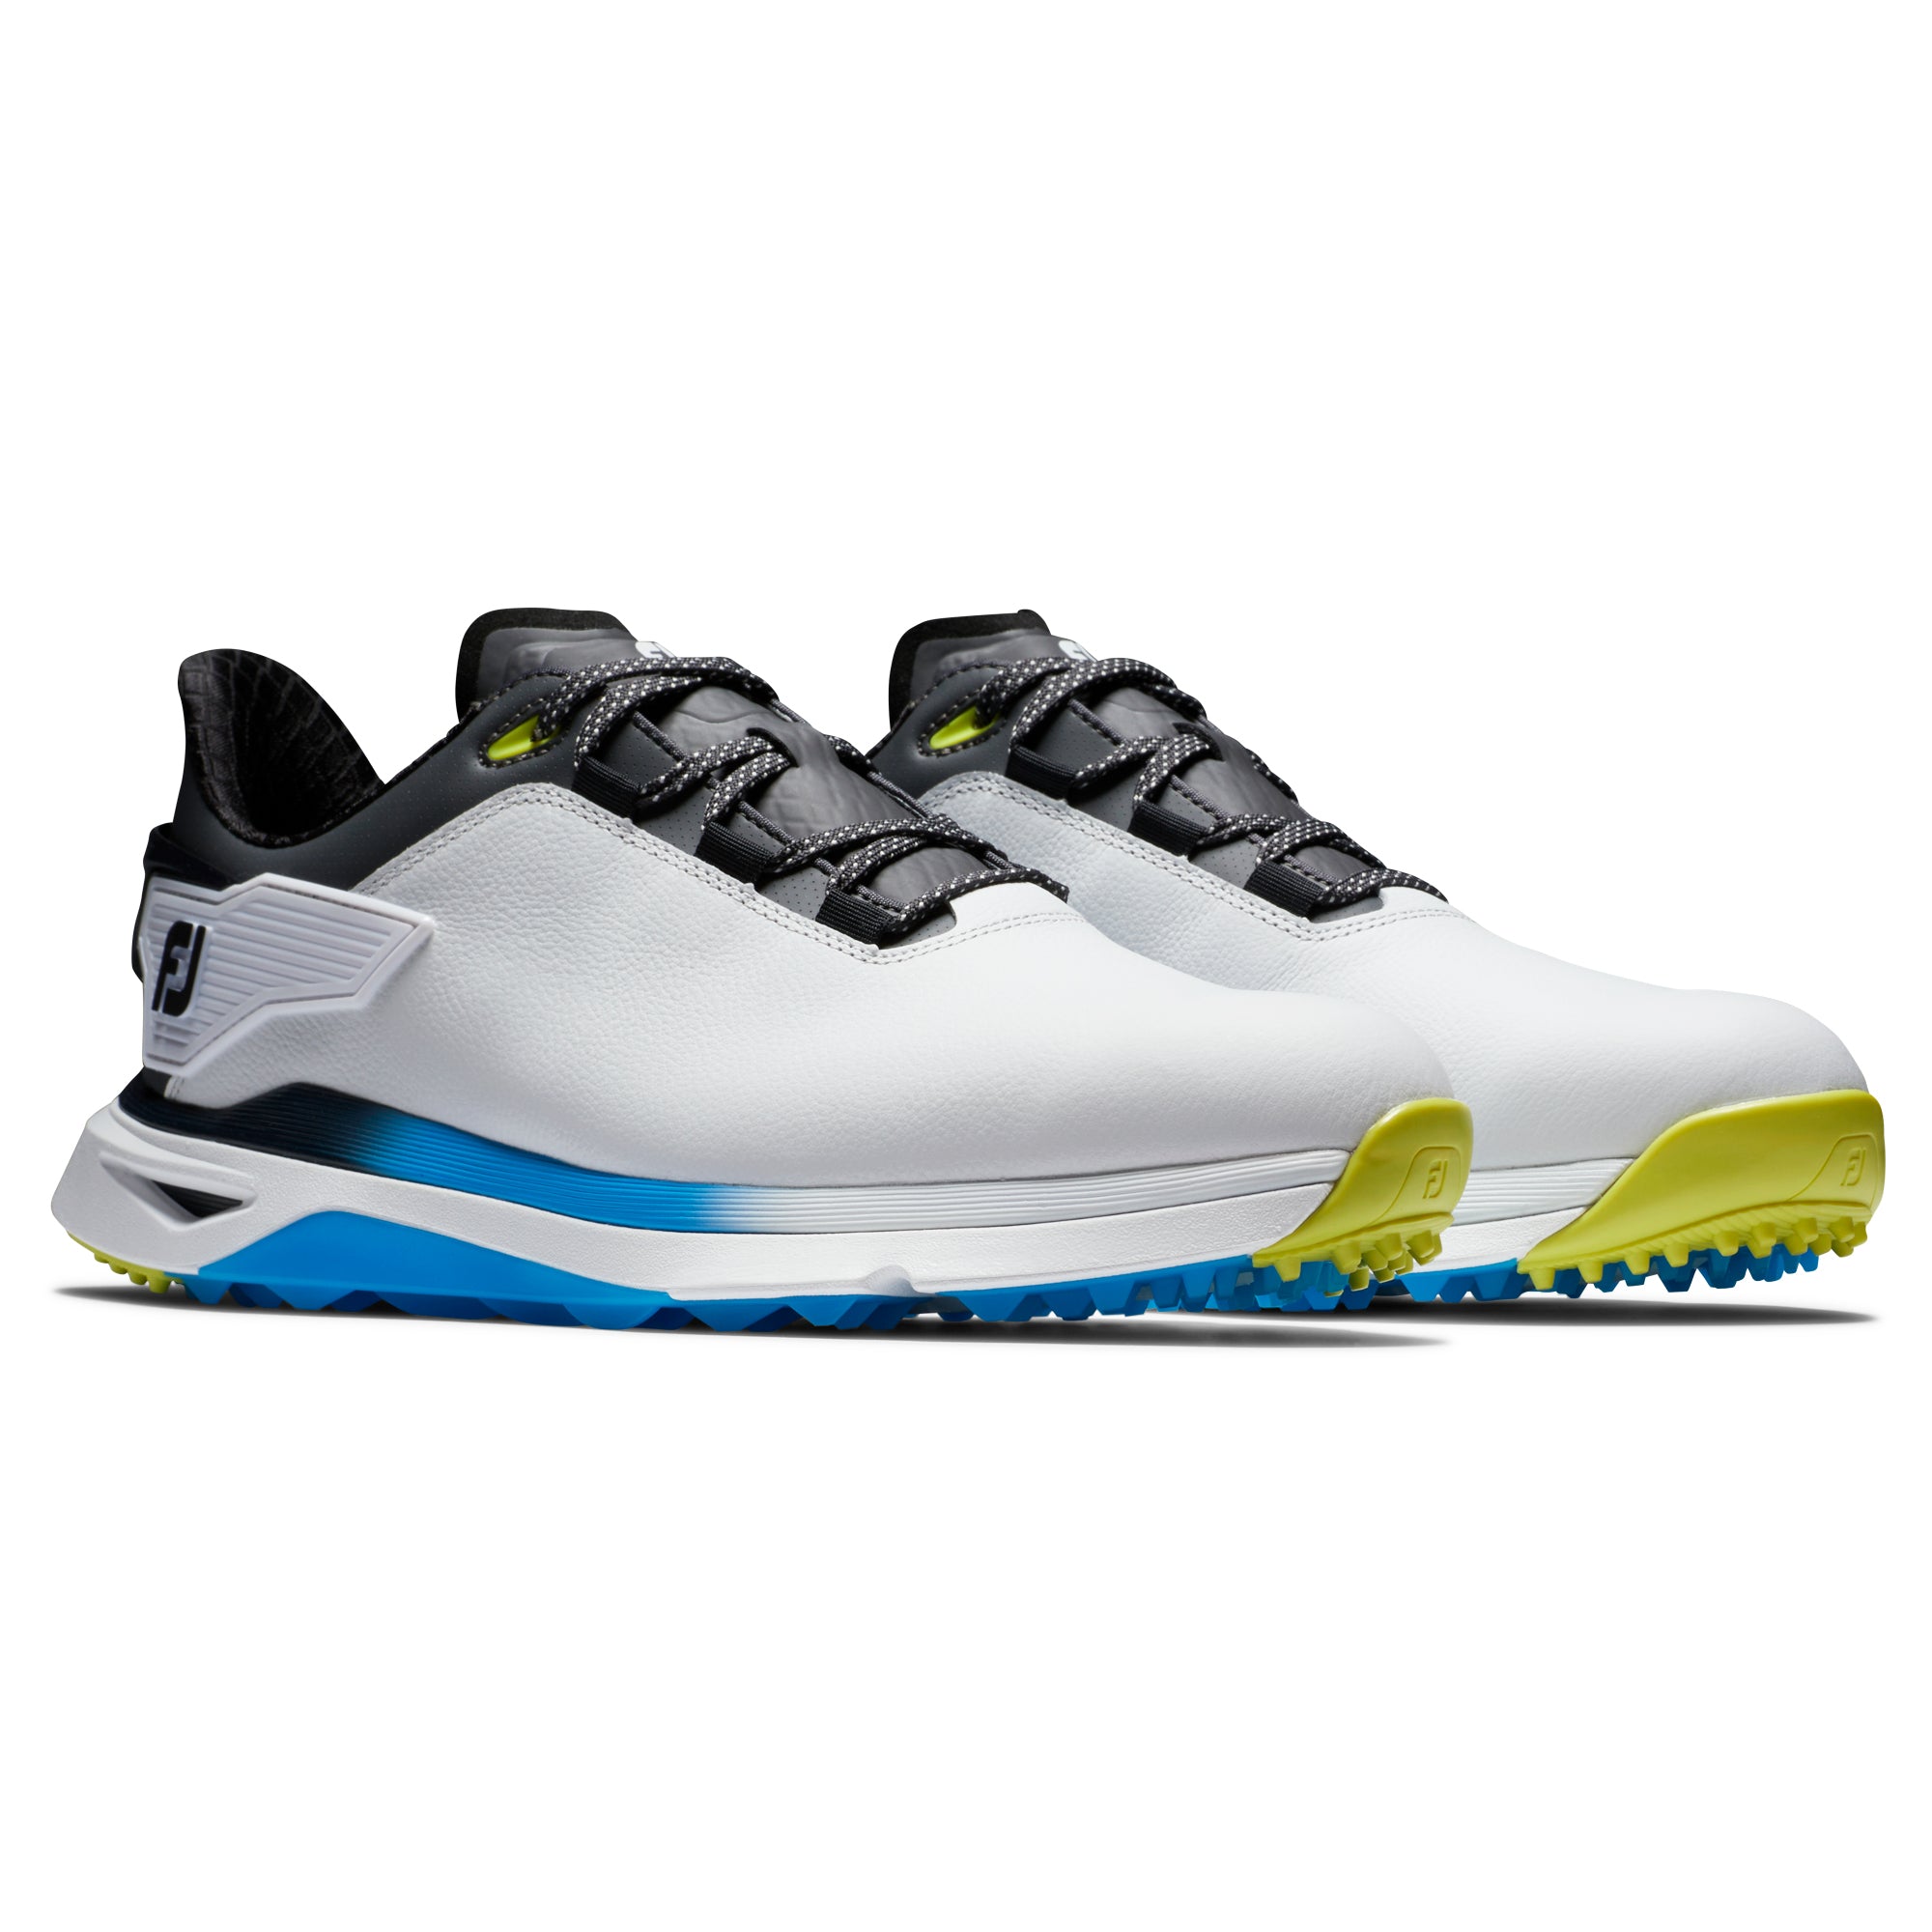 footjoy-pro-slx-carbon-golf-shoes-56918-white-black-multi